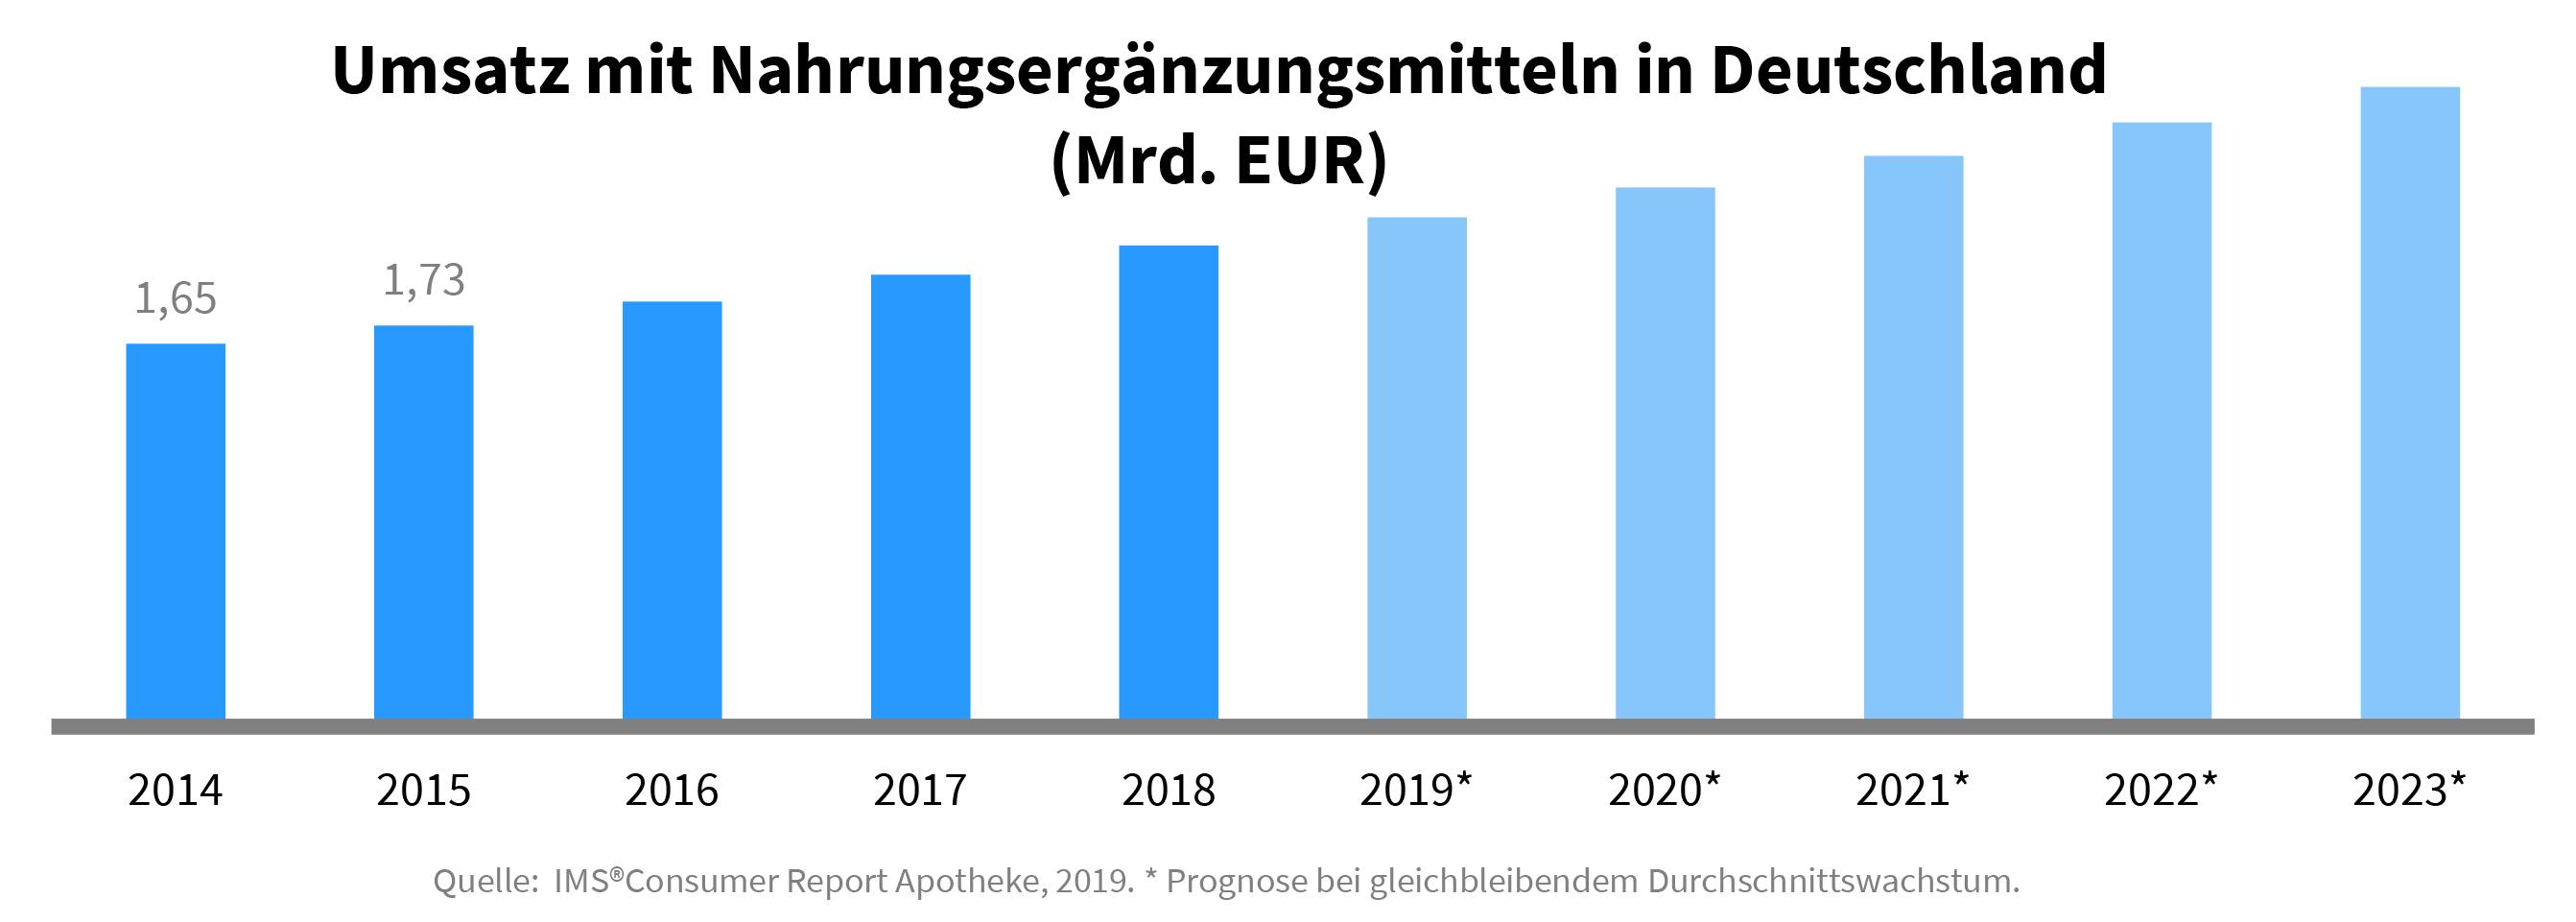 Umsatz mit Nahrungsergnzungsmitteln in Deutschland 2014-2023